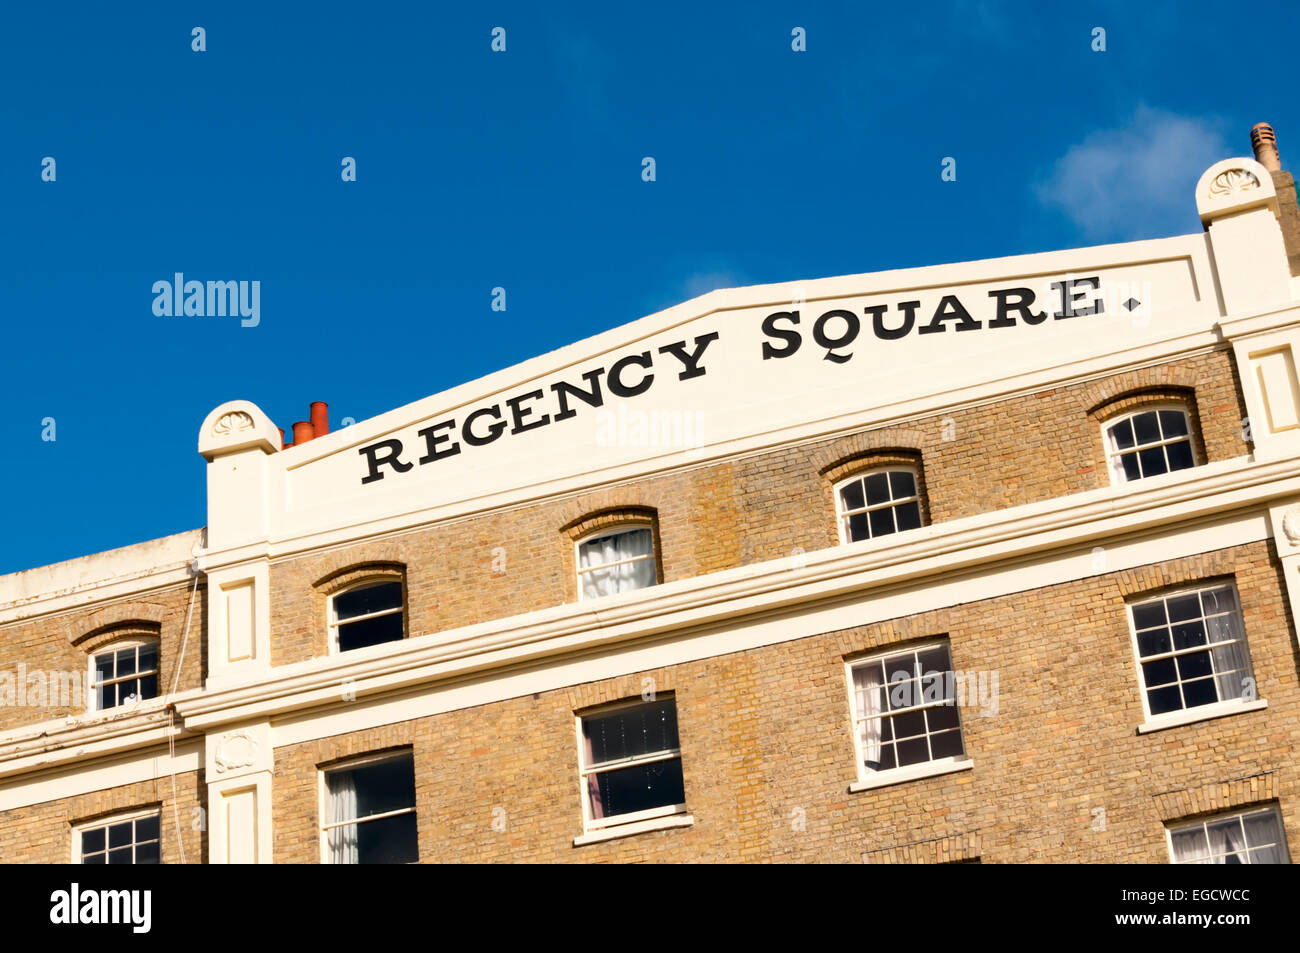 Der Name des Regency Square in Brighton geschrieben auf dem Giebel des eines der Gebäude um den Platz herum. Stockfoto